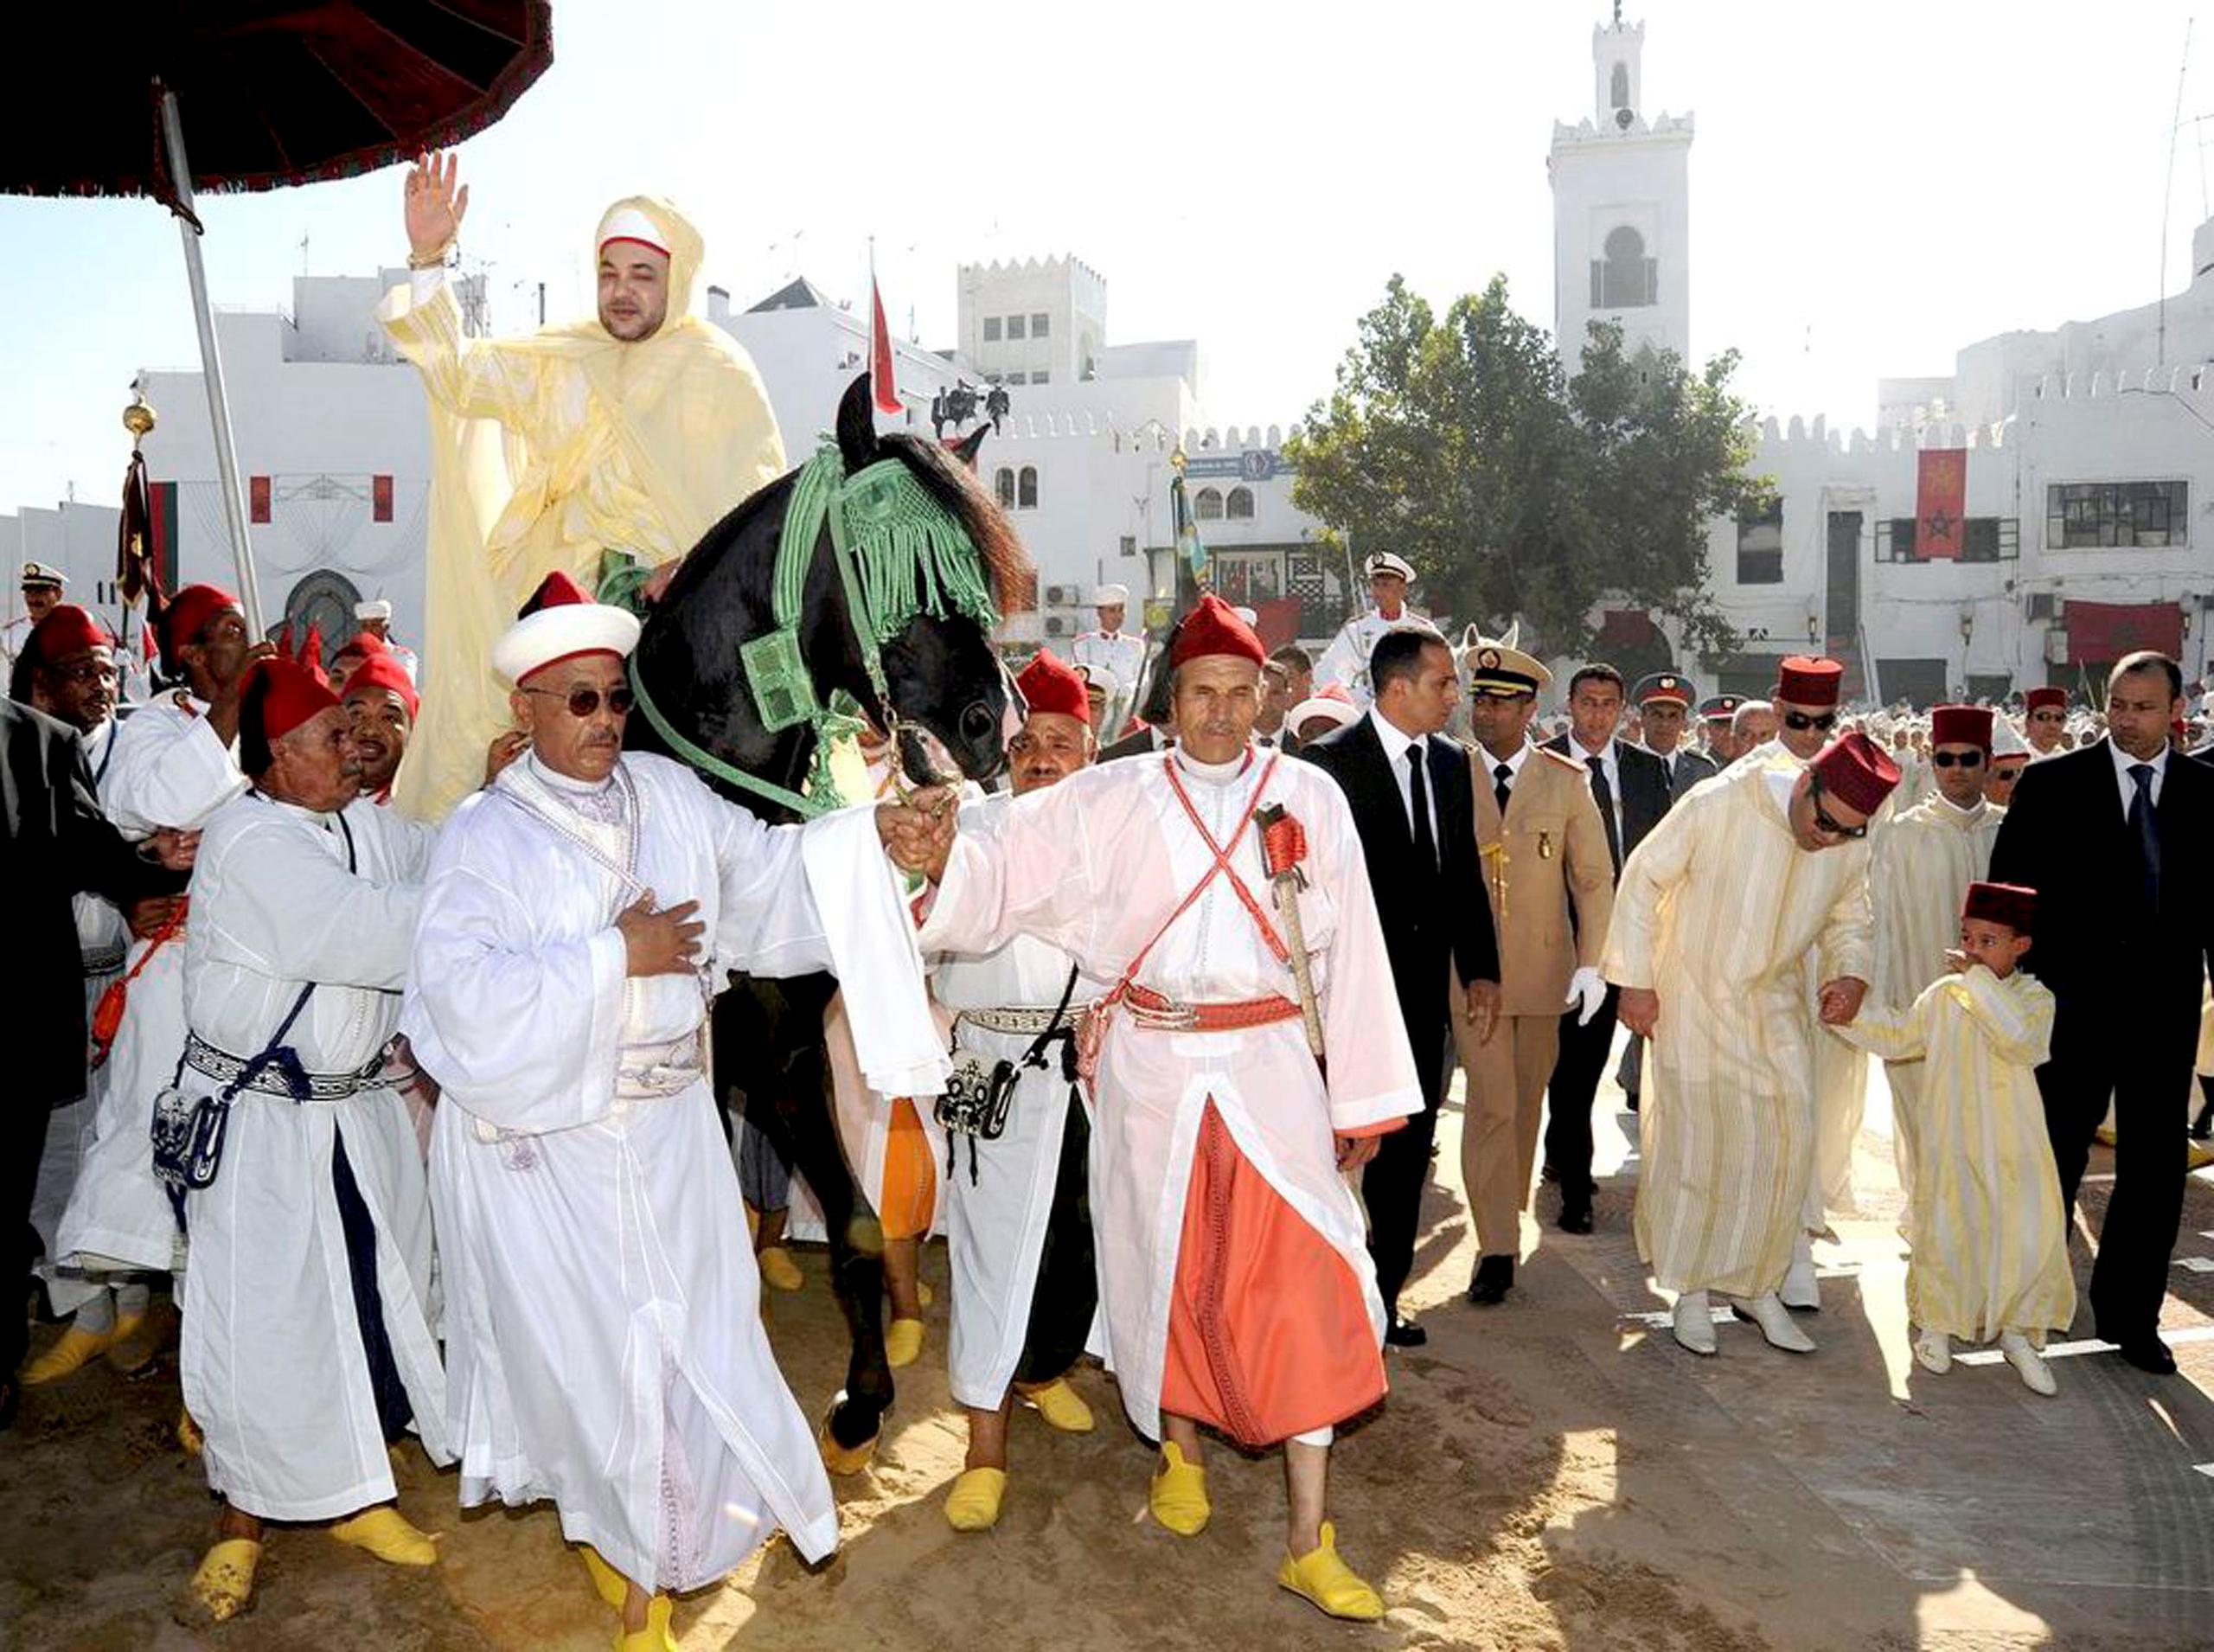 Imagen de archivo del rey de Marruecos, Mohamed VI durante la "beia", la ceremonia en la que los notables del reino le rinden pleitesía con motivo de la Fiesta del Trono. EFE/ZACARÍAS GARCÍA
